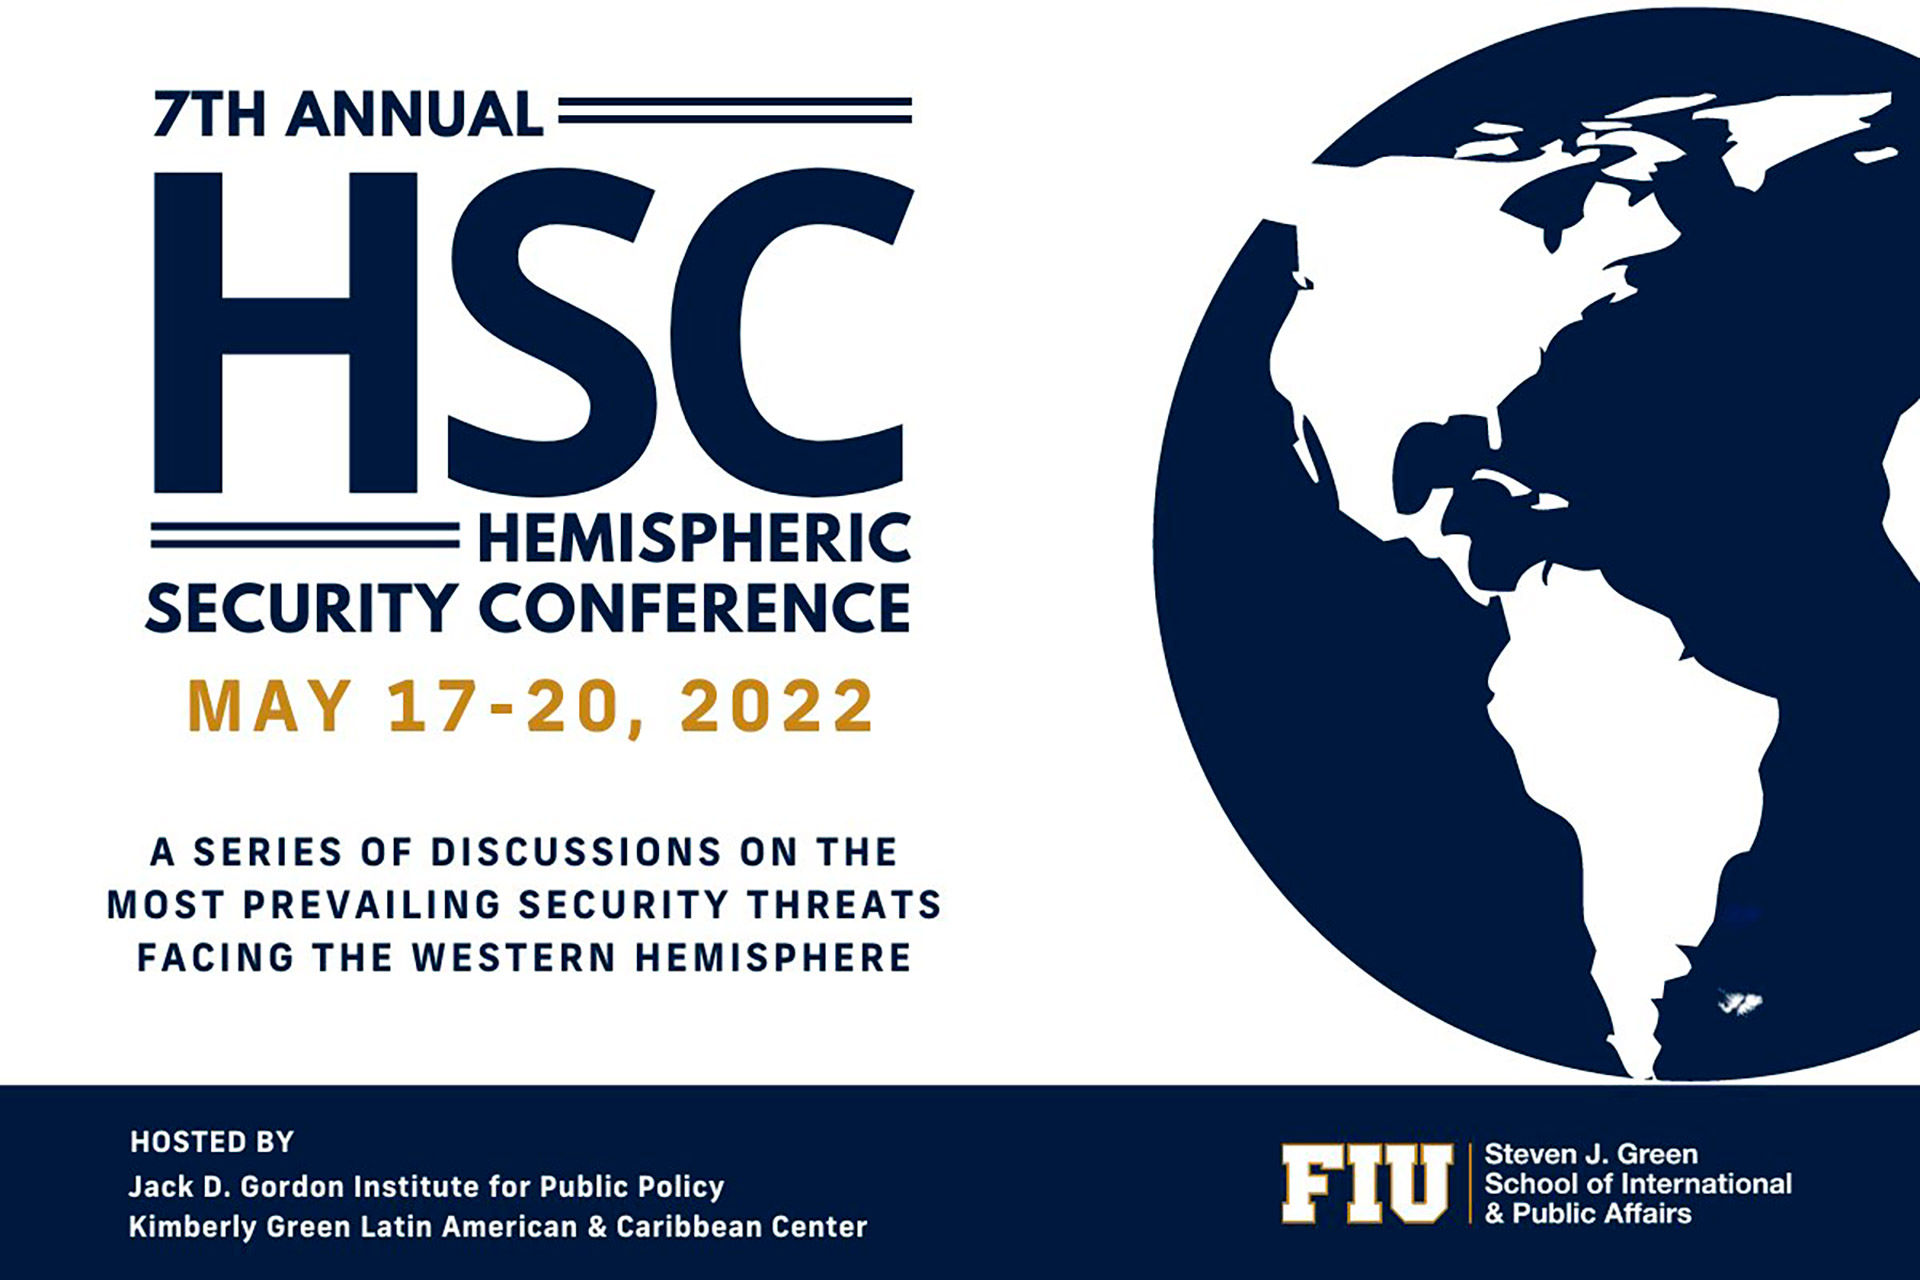 La 7ma Conferencia Anual de Seguridad Hemisférica se llevará a cabo del 17 al 20 de mayo